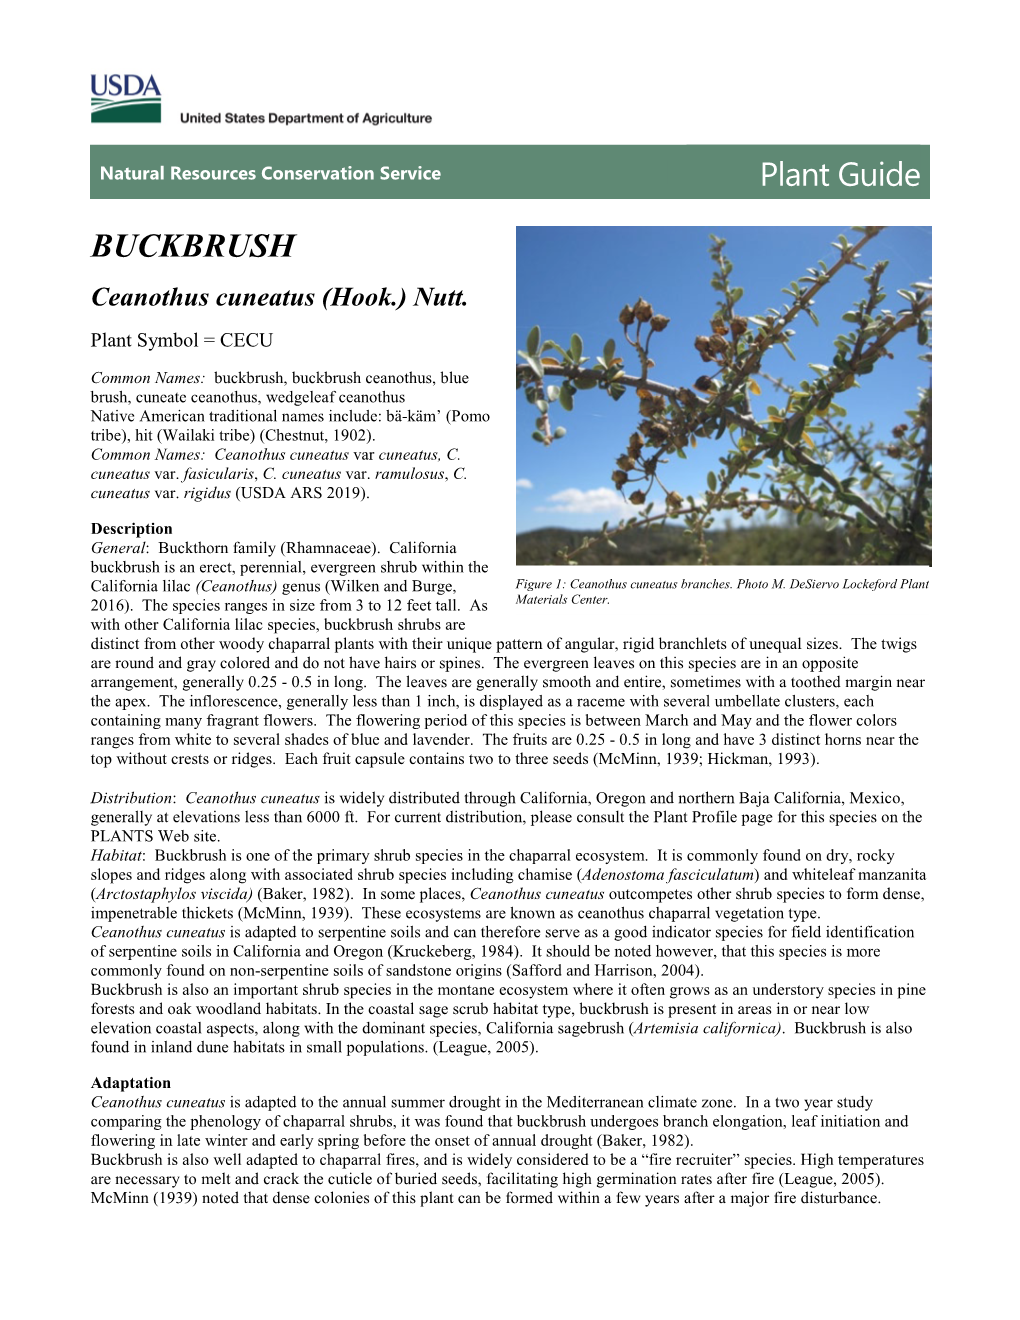 Plant Guide, Buckbrush, Ceanothus Cuneatus